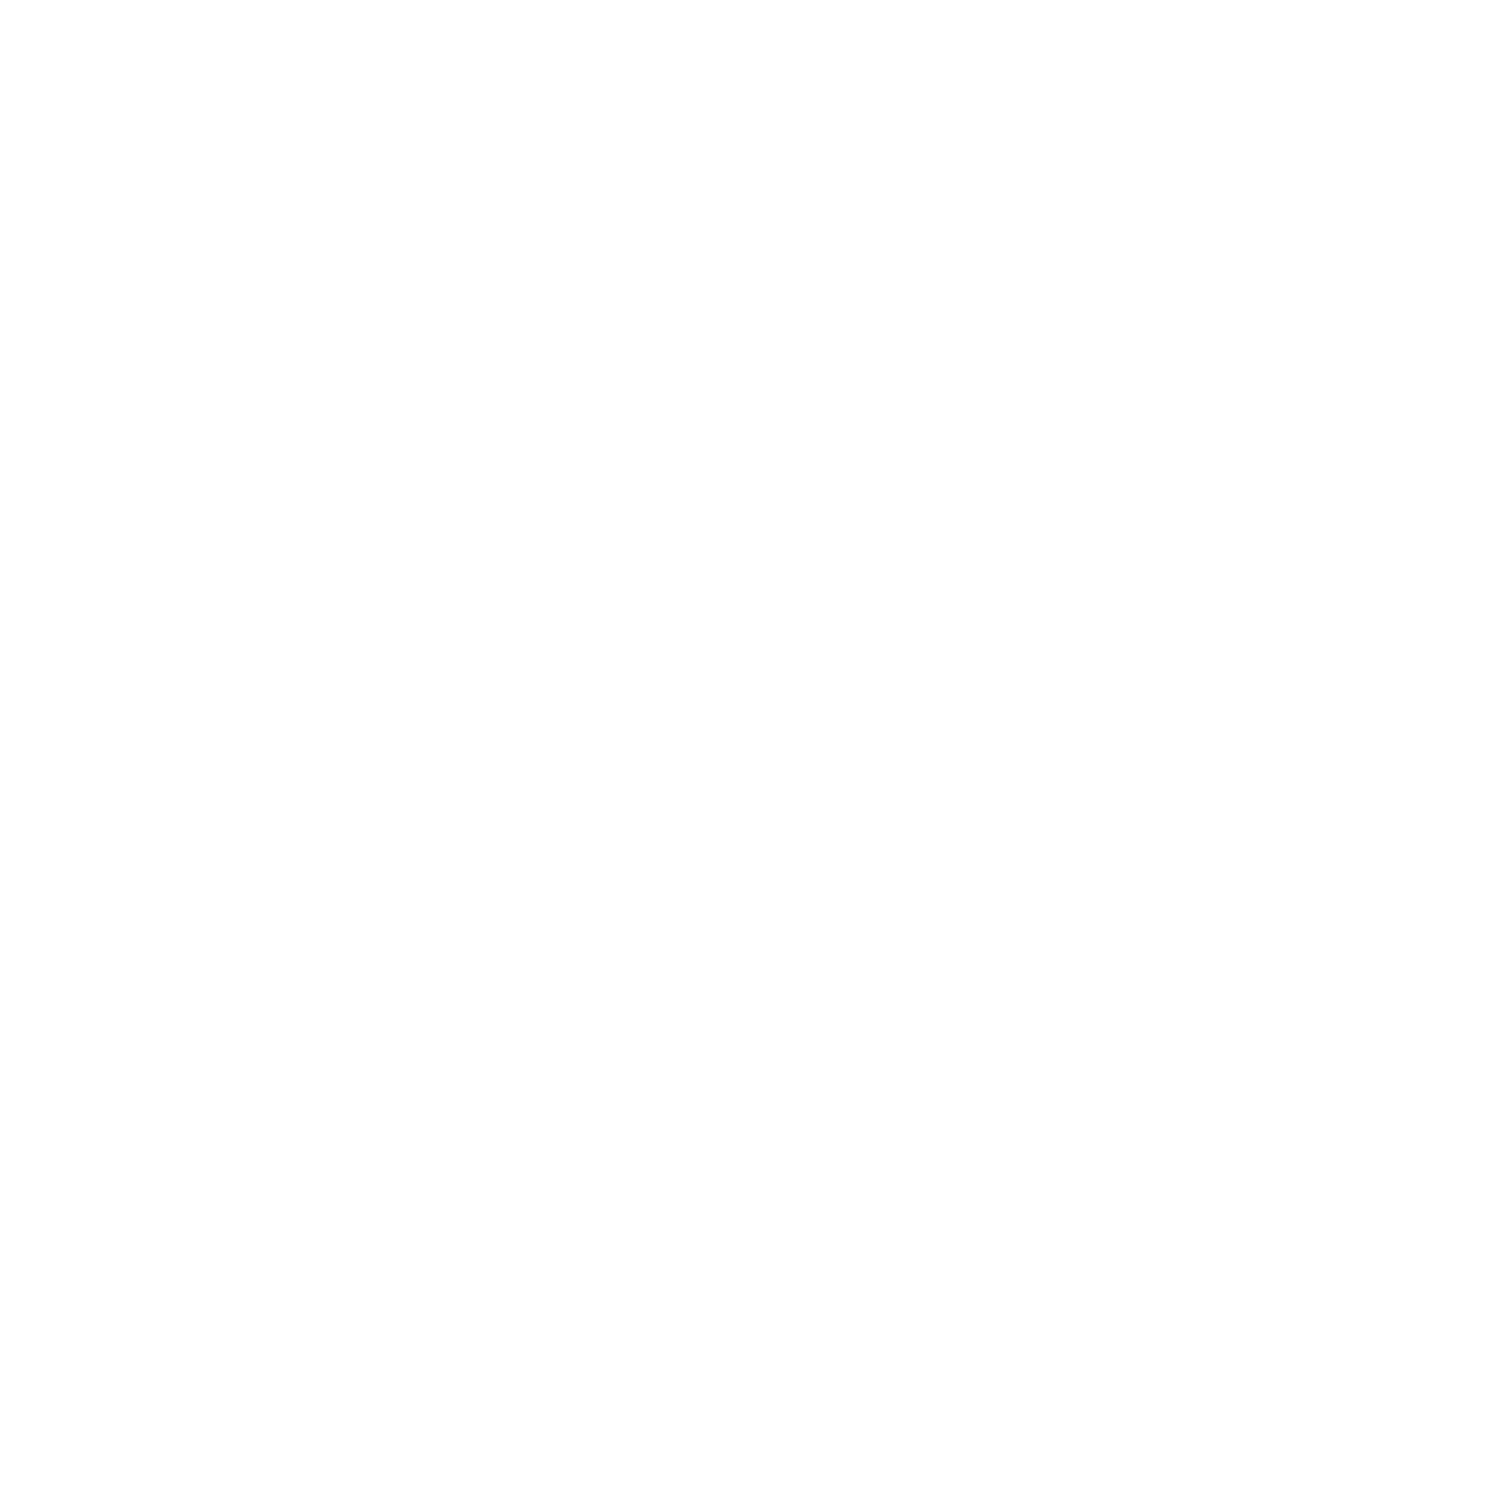 post 1917